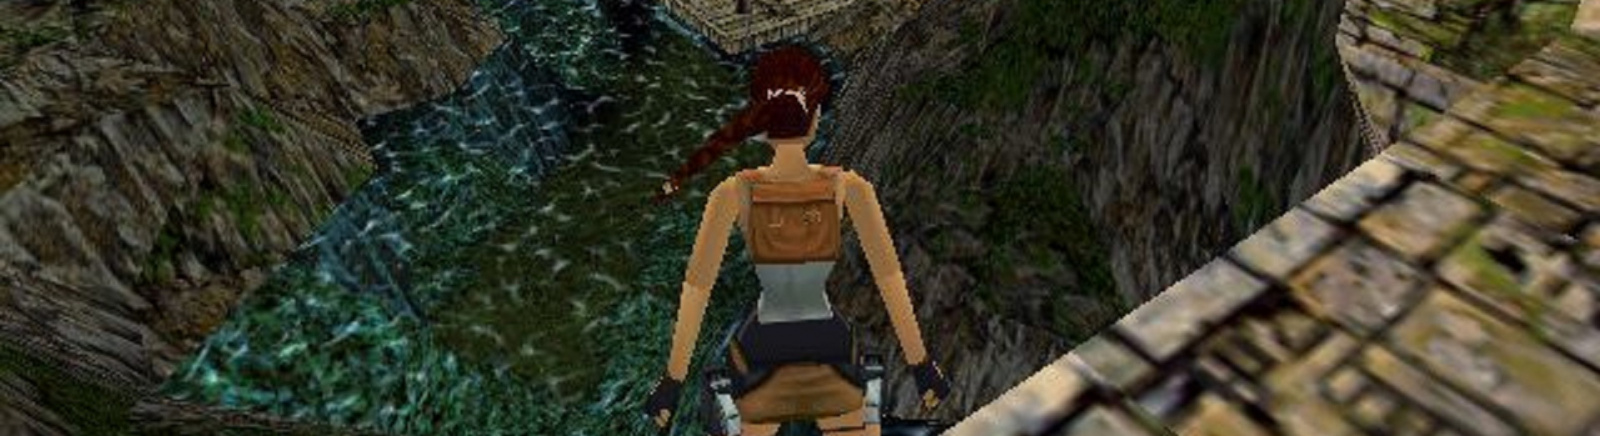 Дата выхода Tomb Raider 3: The Lost Artifact  на PC в России и во всем мире